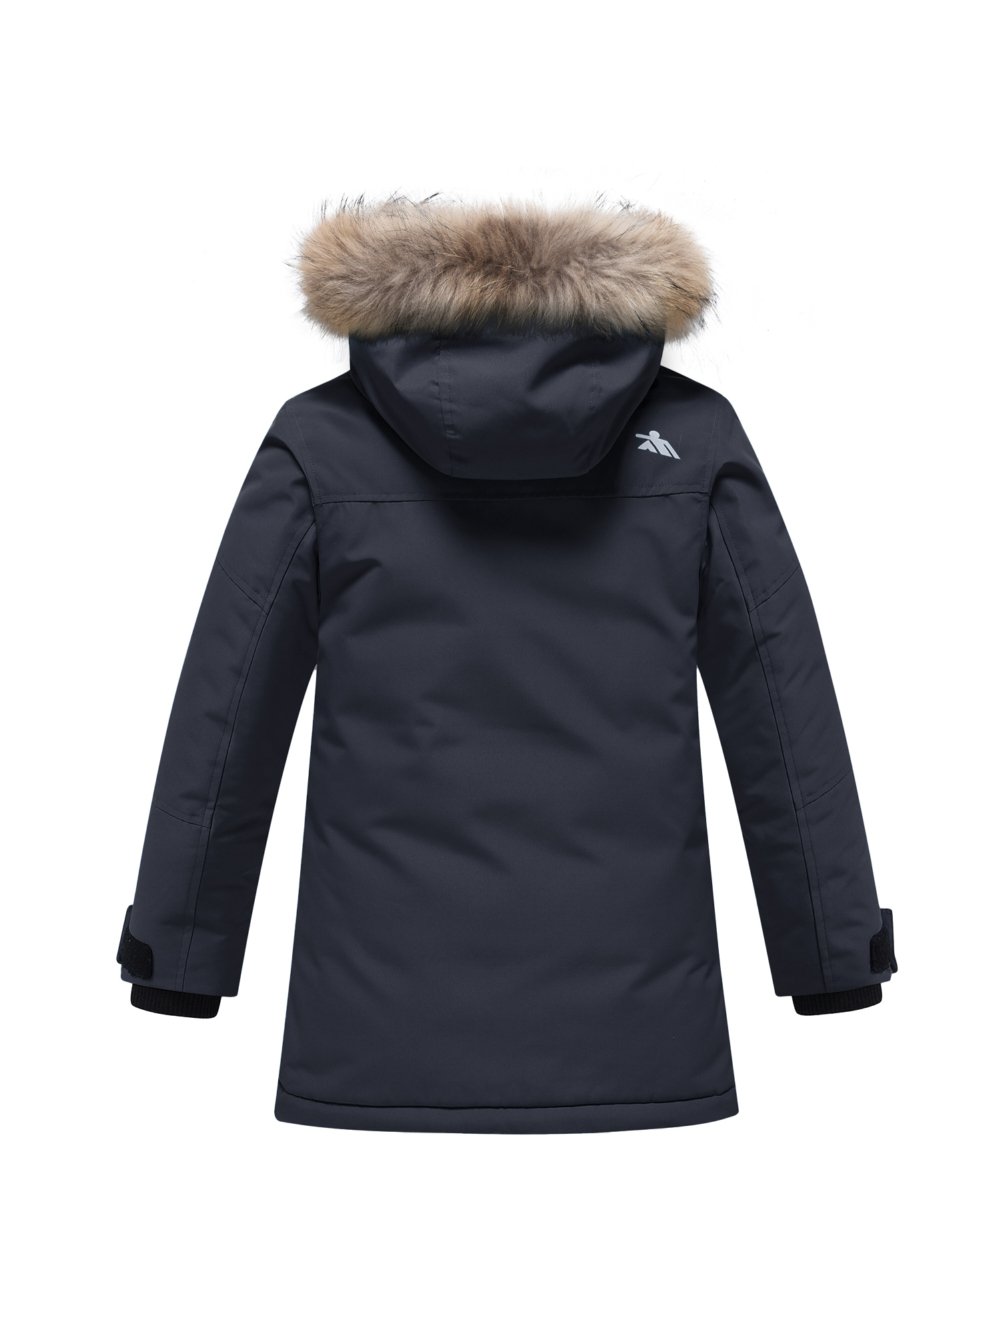 Купить куртку парку для мальчика оптом от производителя недорого в Москве 9339Ch 1